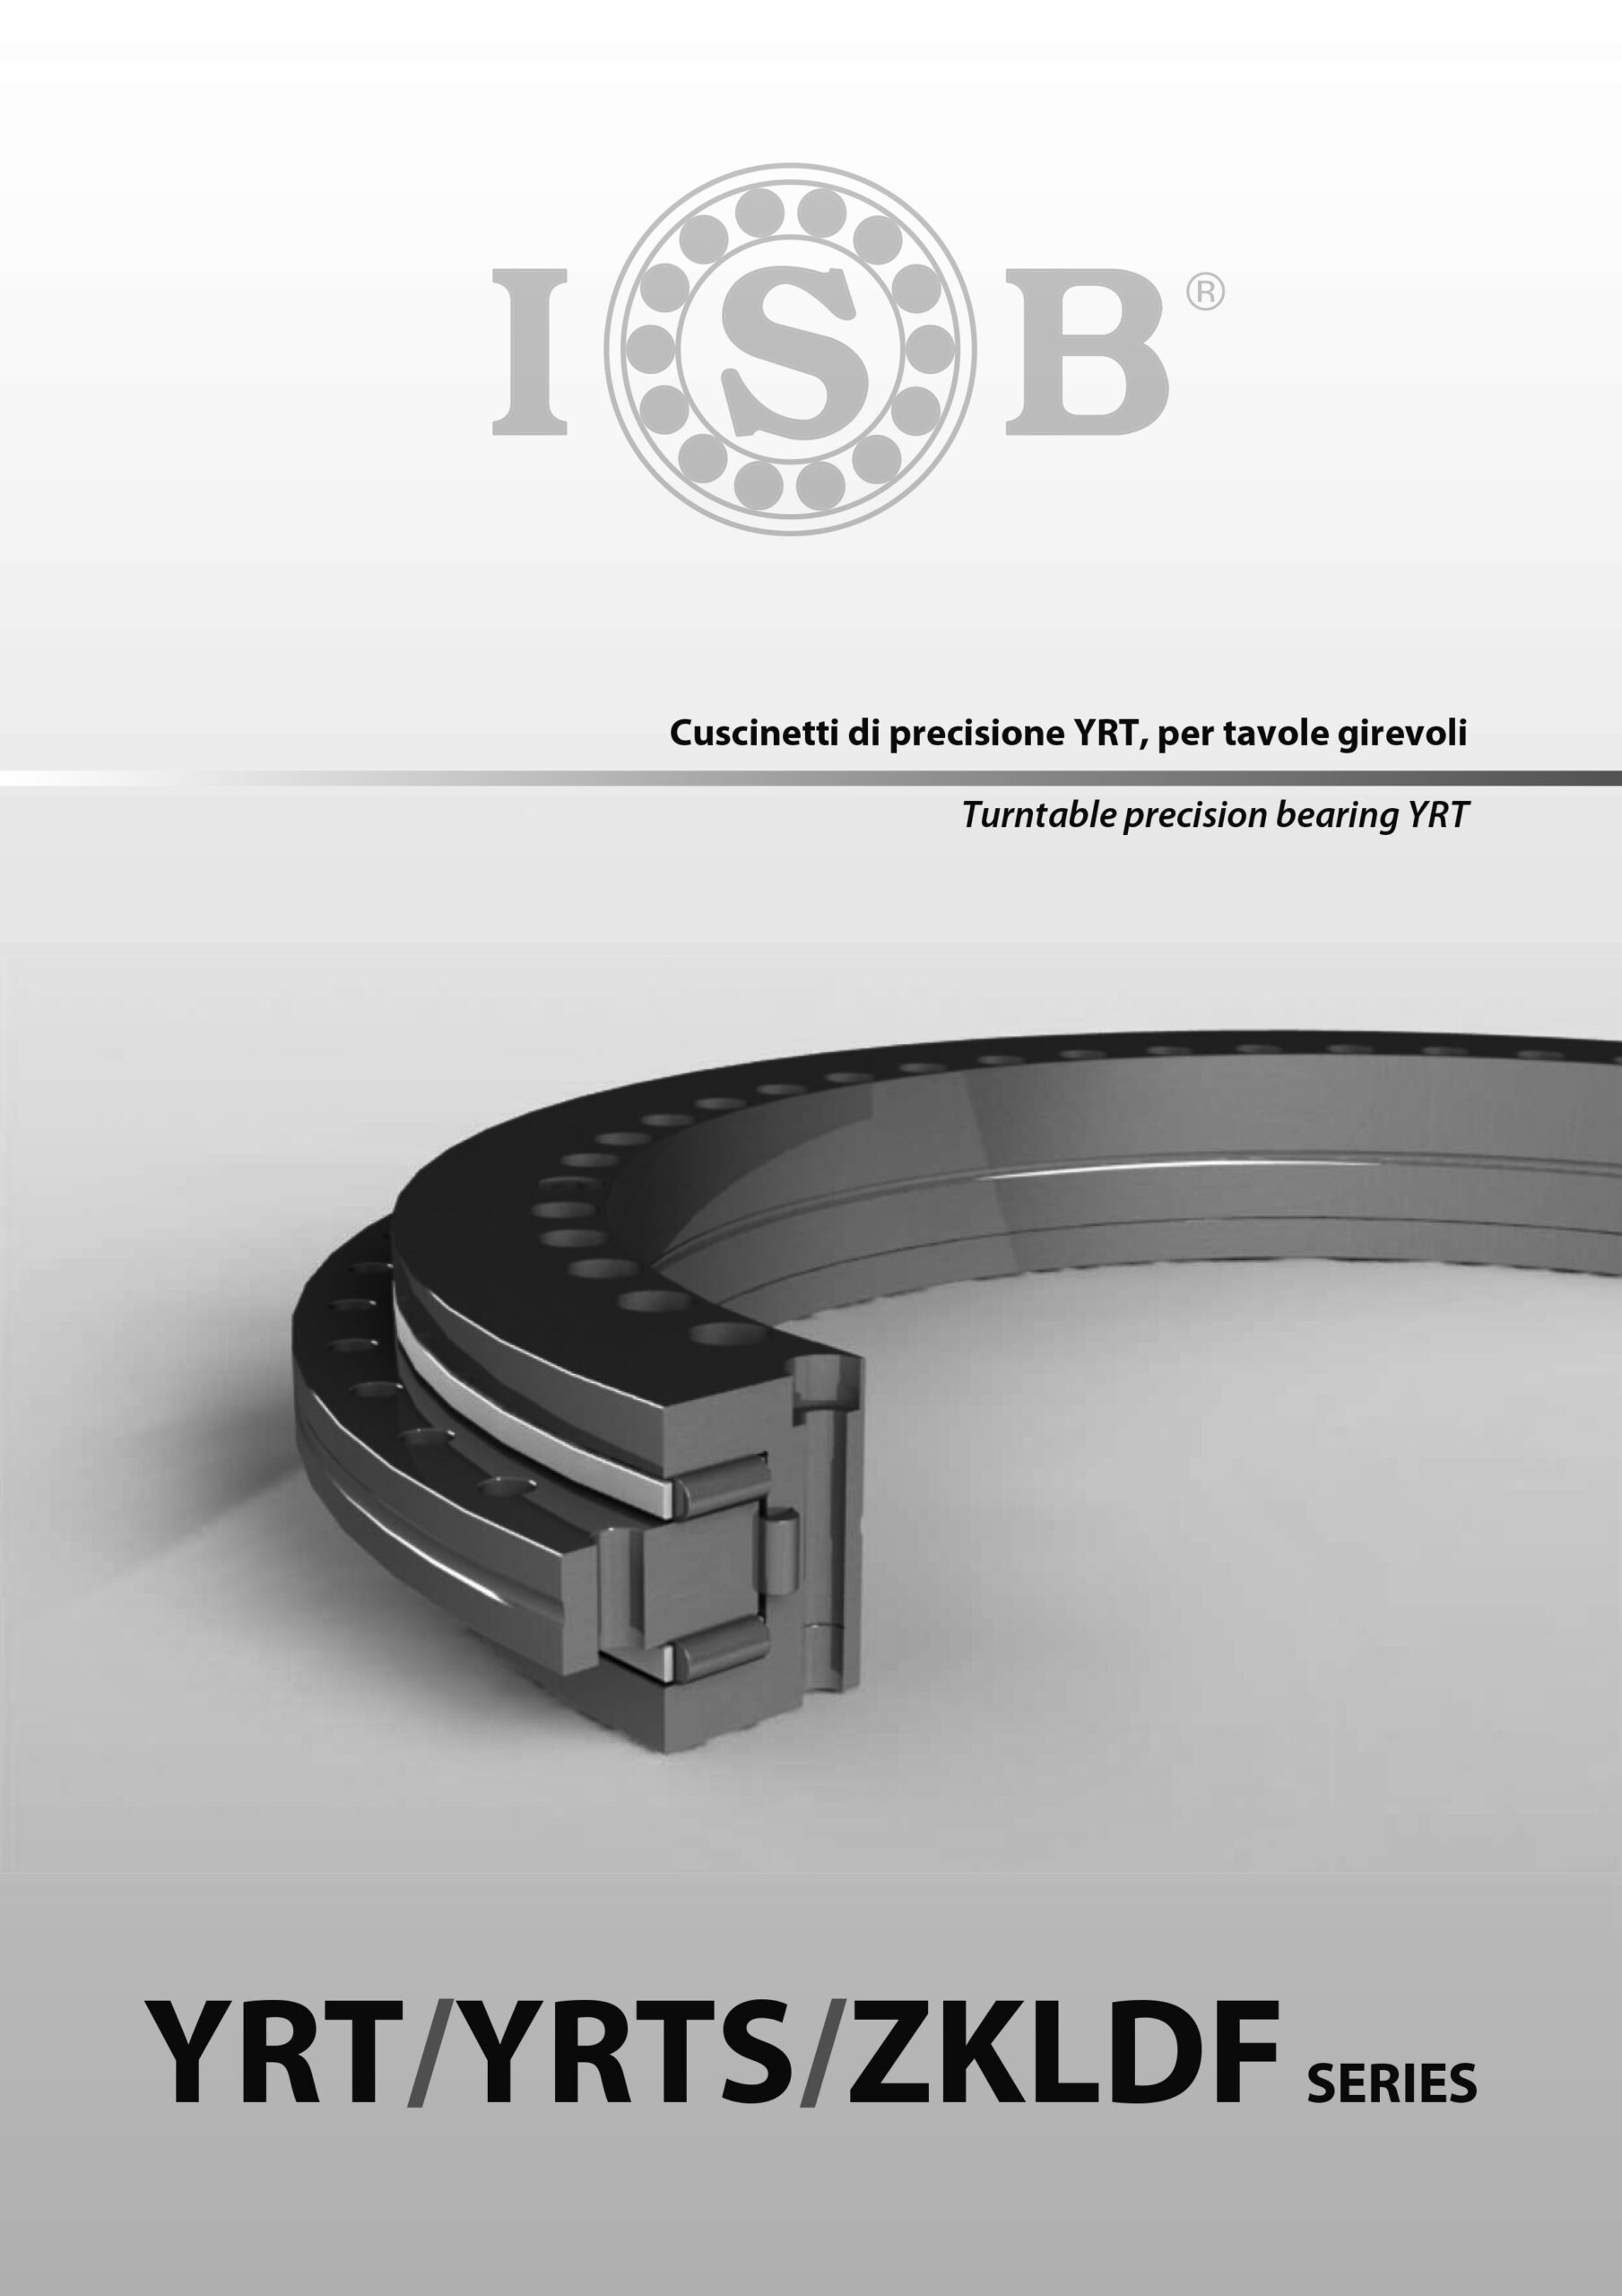 Coronas-de-giro-de-precision-para-mesas-giratorias-ISB-scaled.jpg